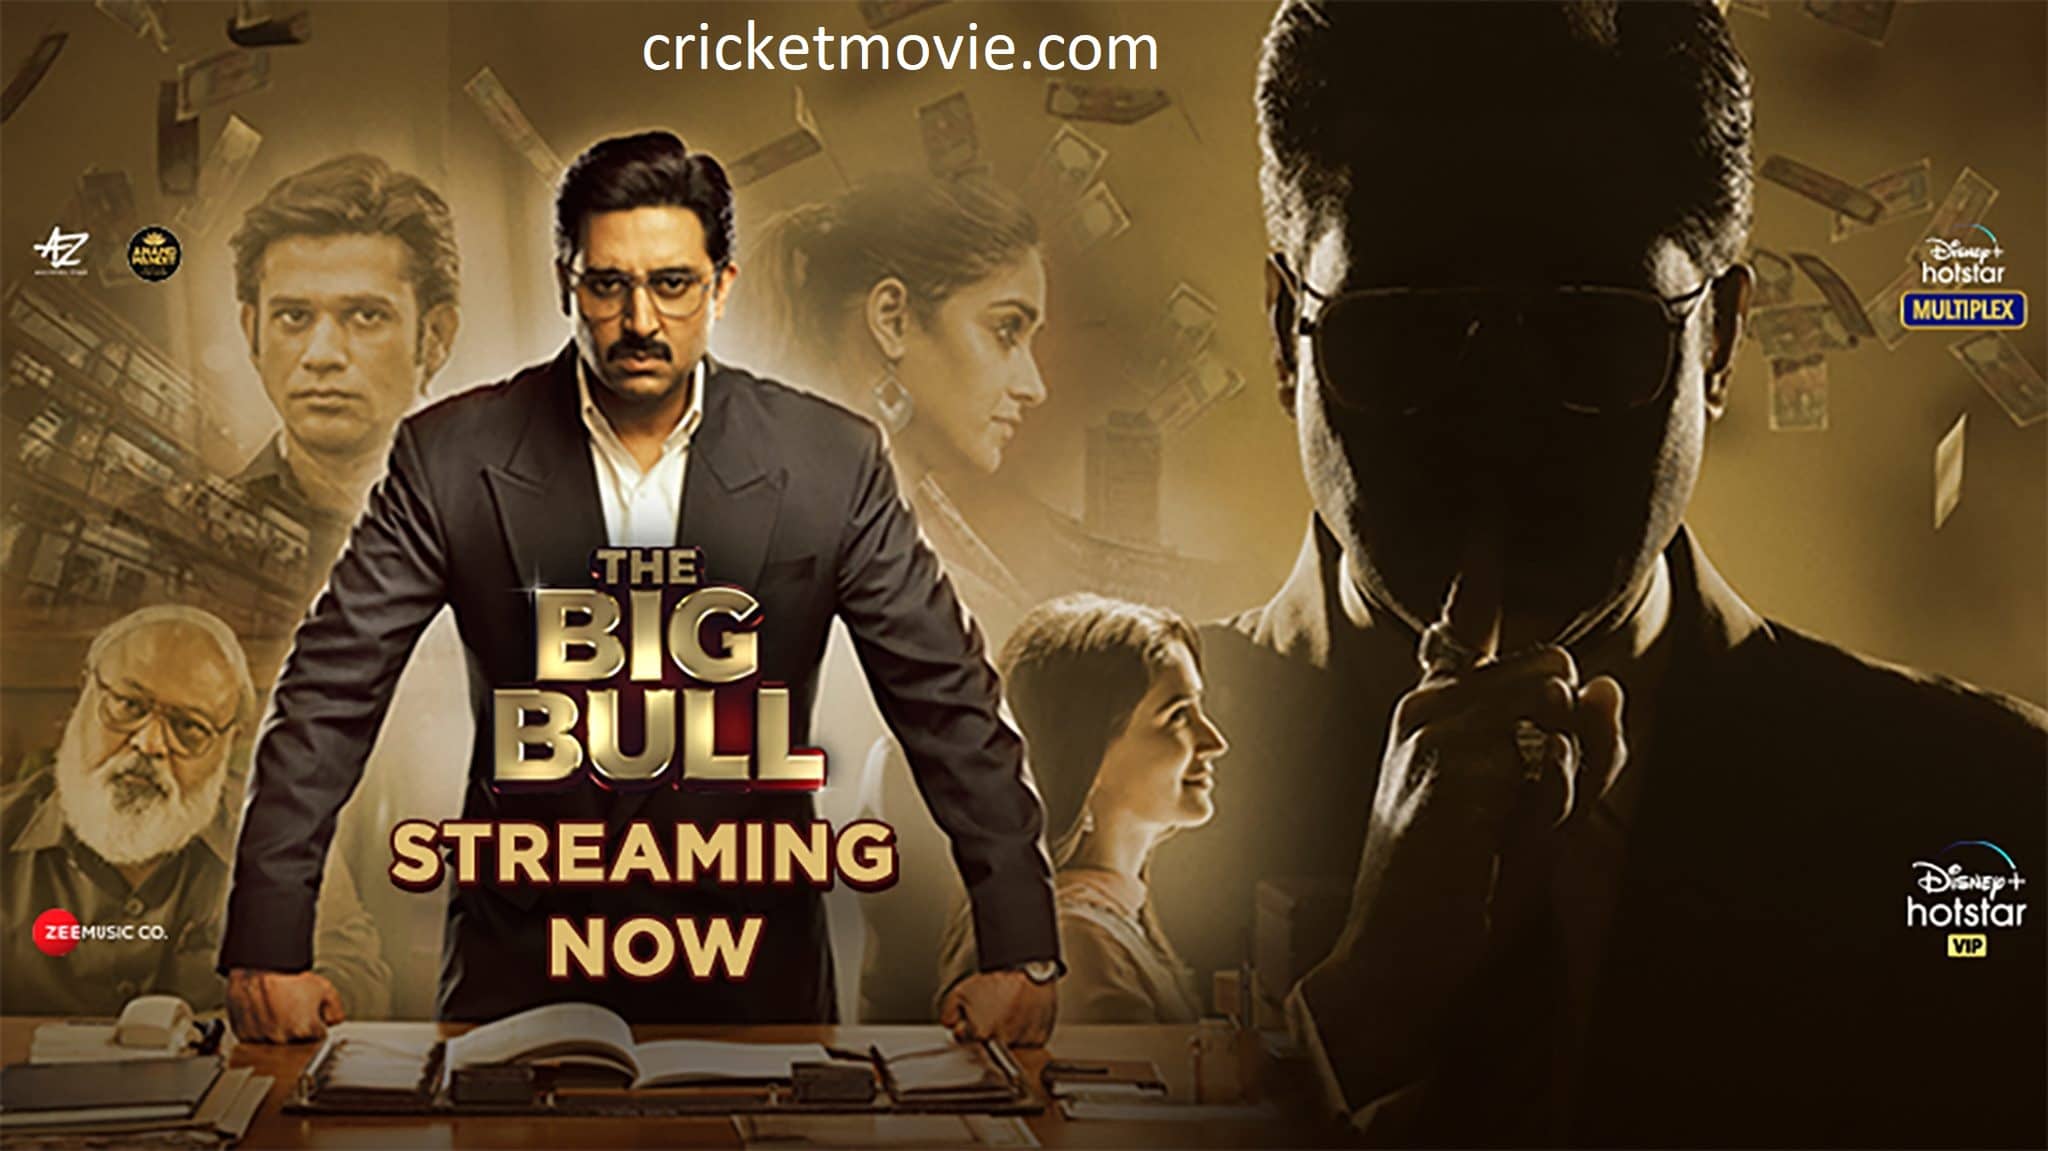 The Big Bull Review-cricketmovie.com